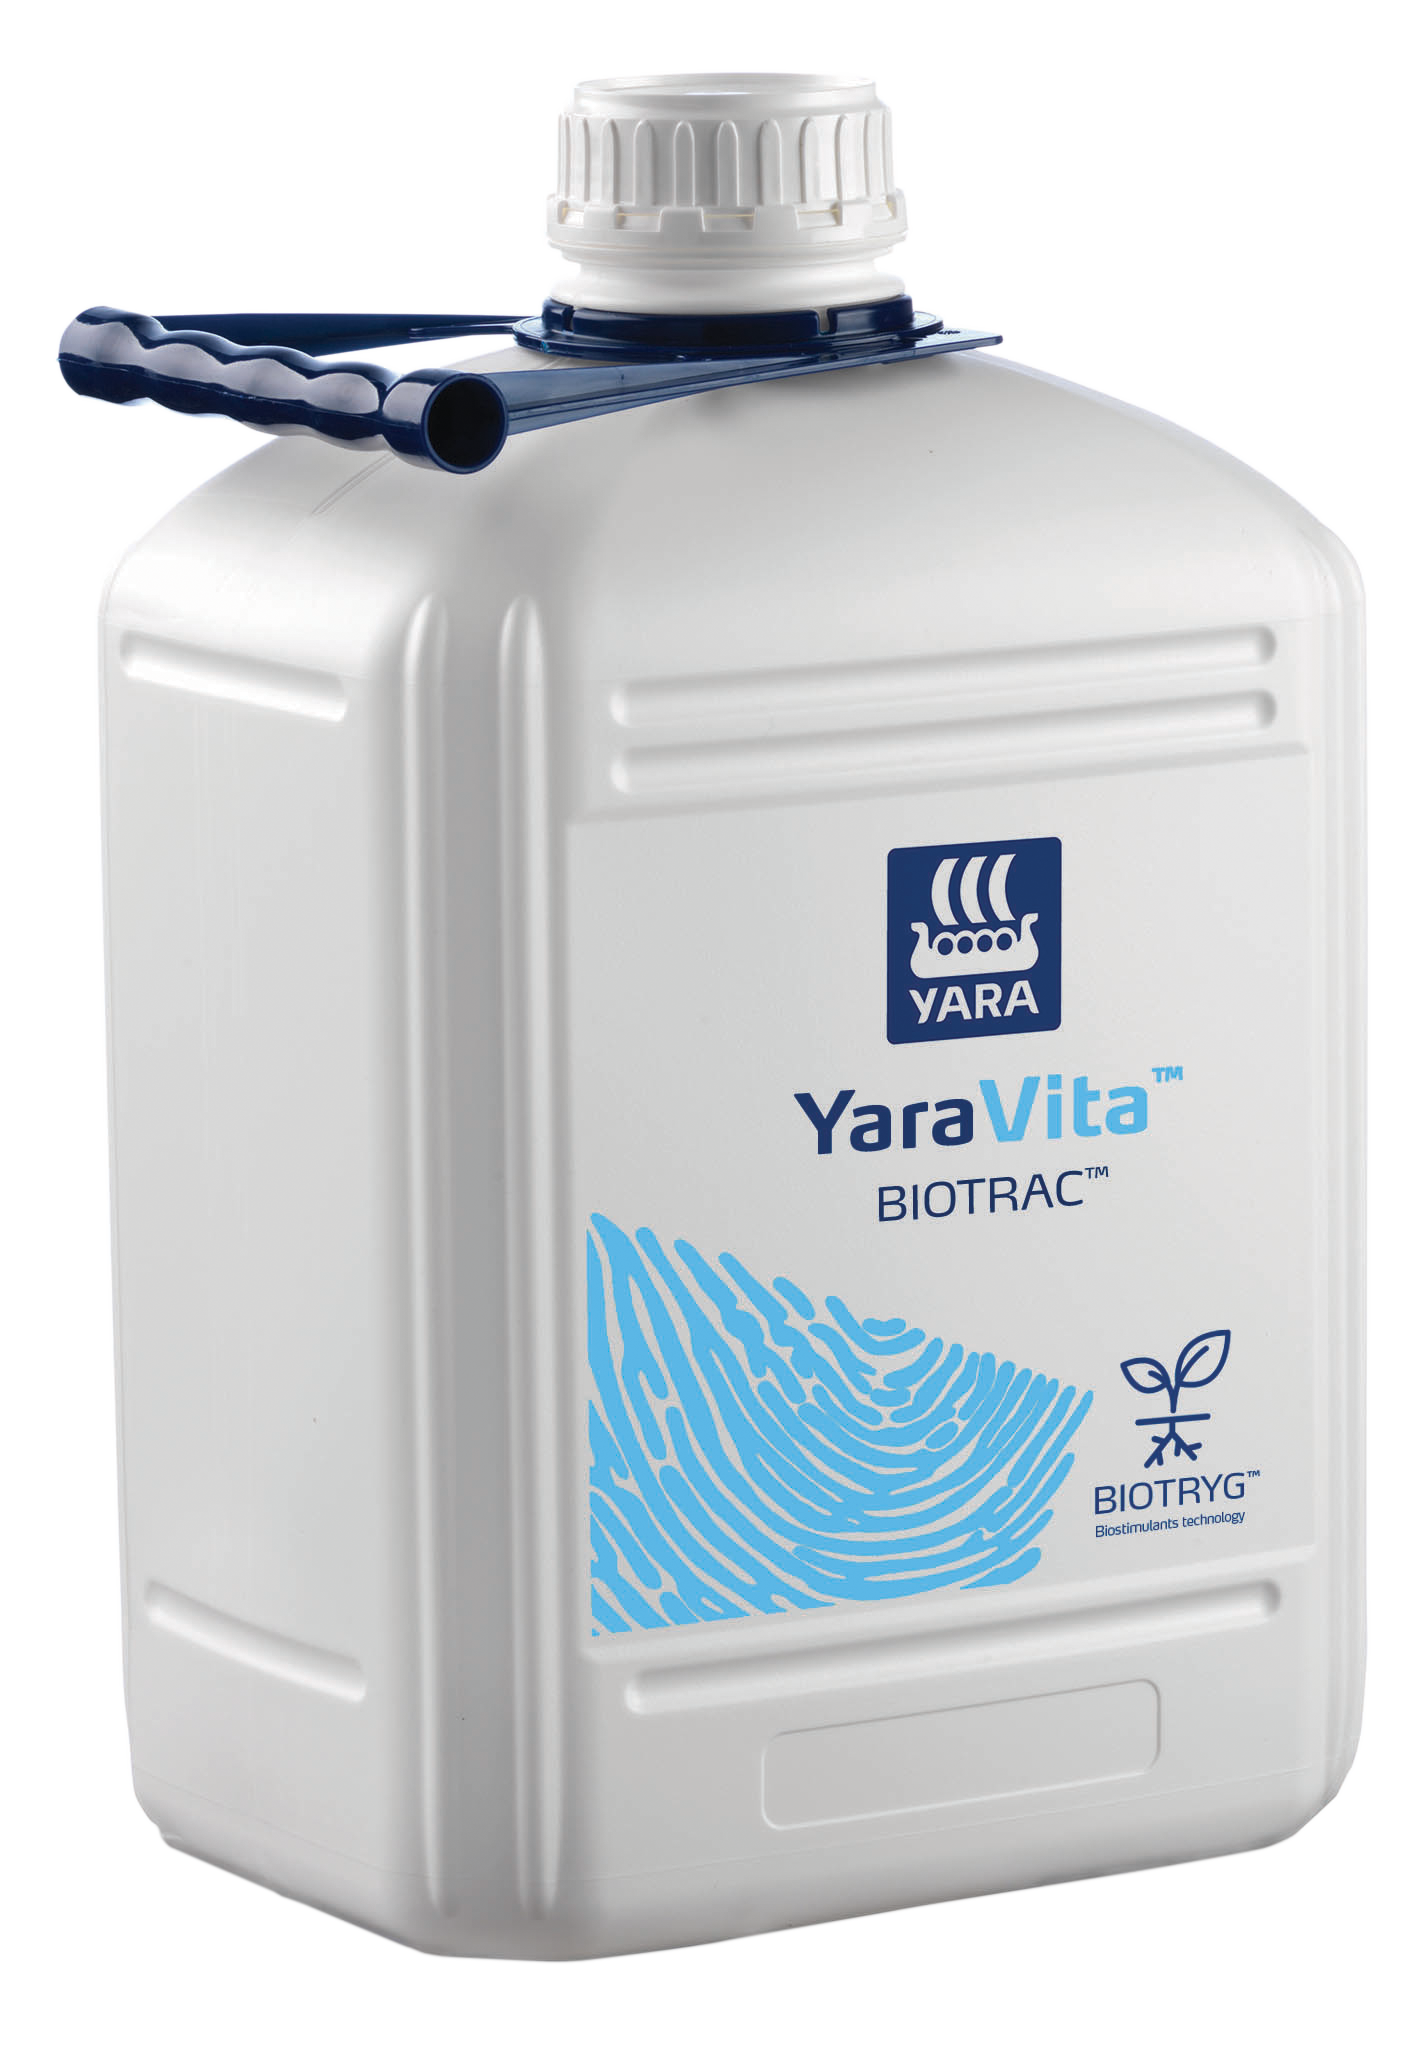 YaraVita Biotrac 400 L - 480 L